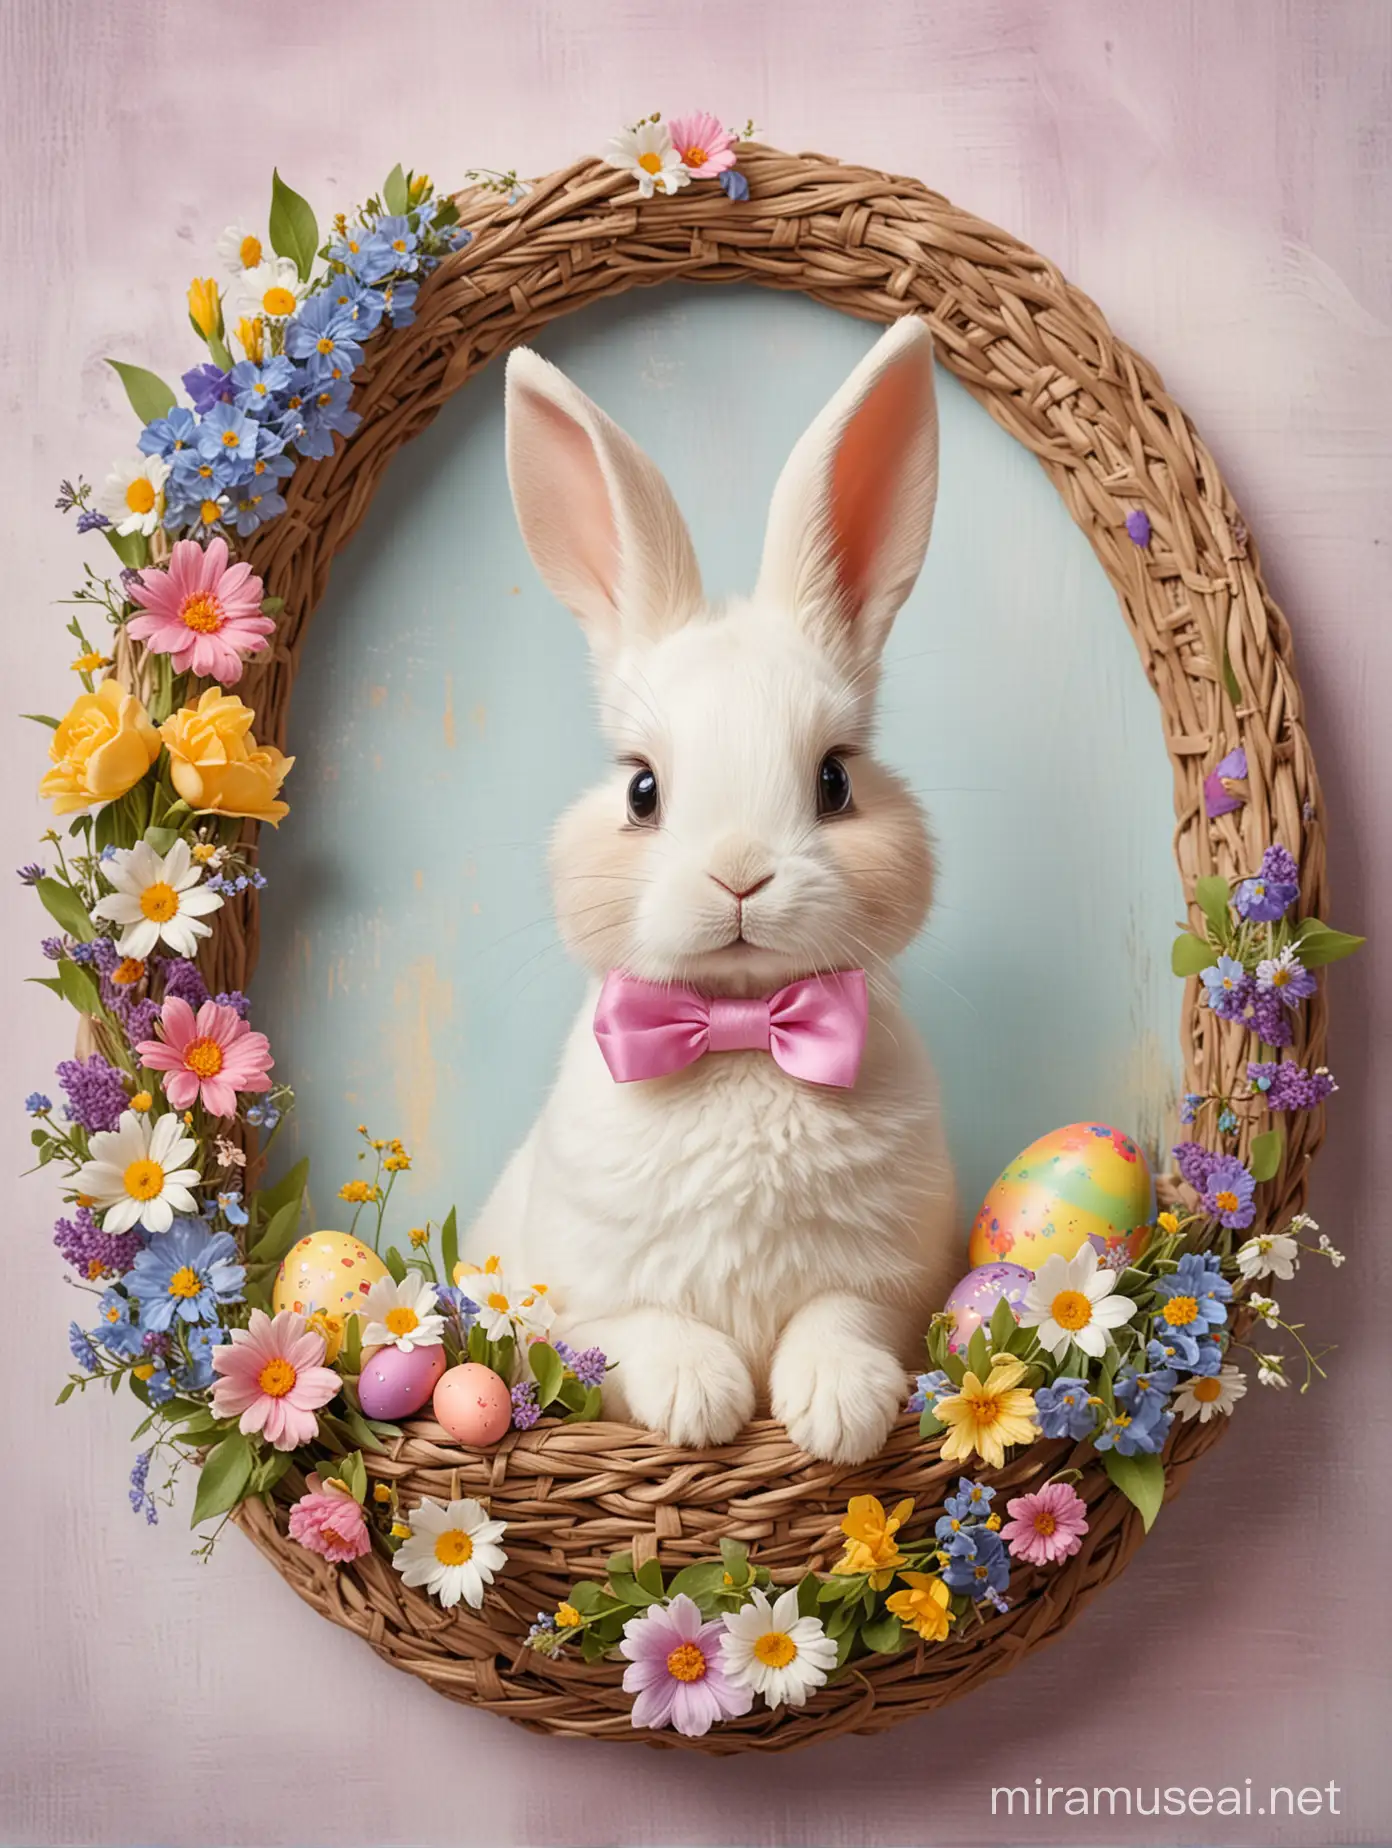 obrazek kolorowymi farbami.  owalna ramka z wiosennych kwiatów, w środku słodki mały królik z dużymi czarującymi oczami, kokardą i koszykiem pisanek,